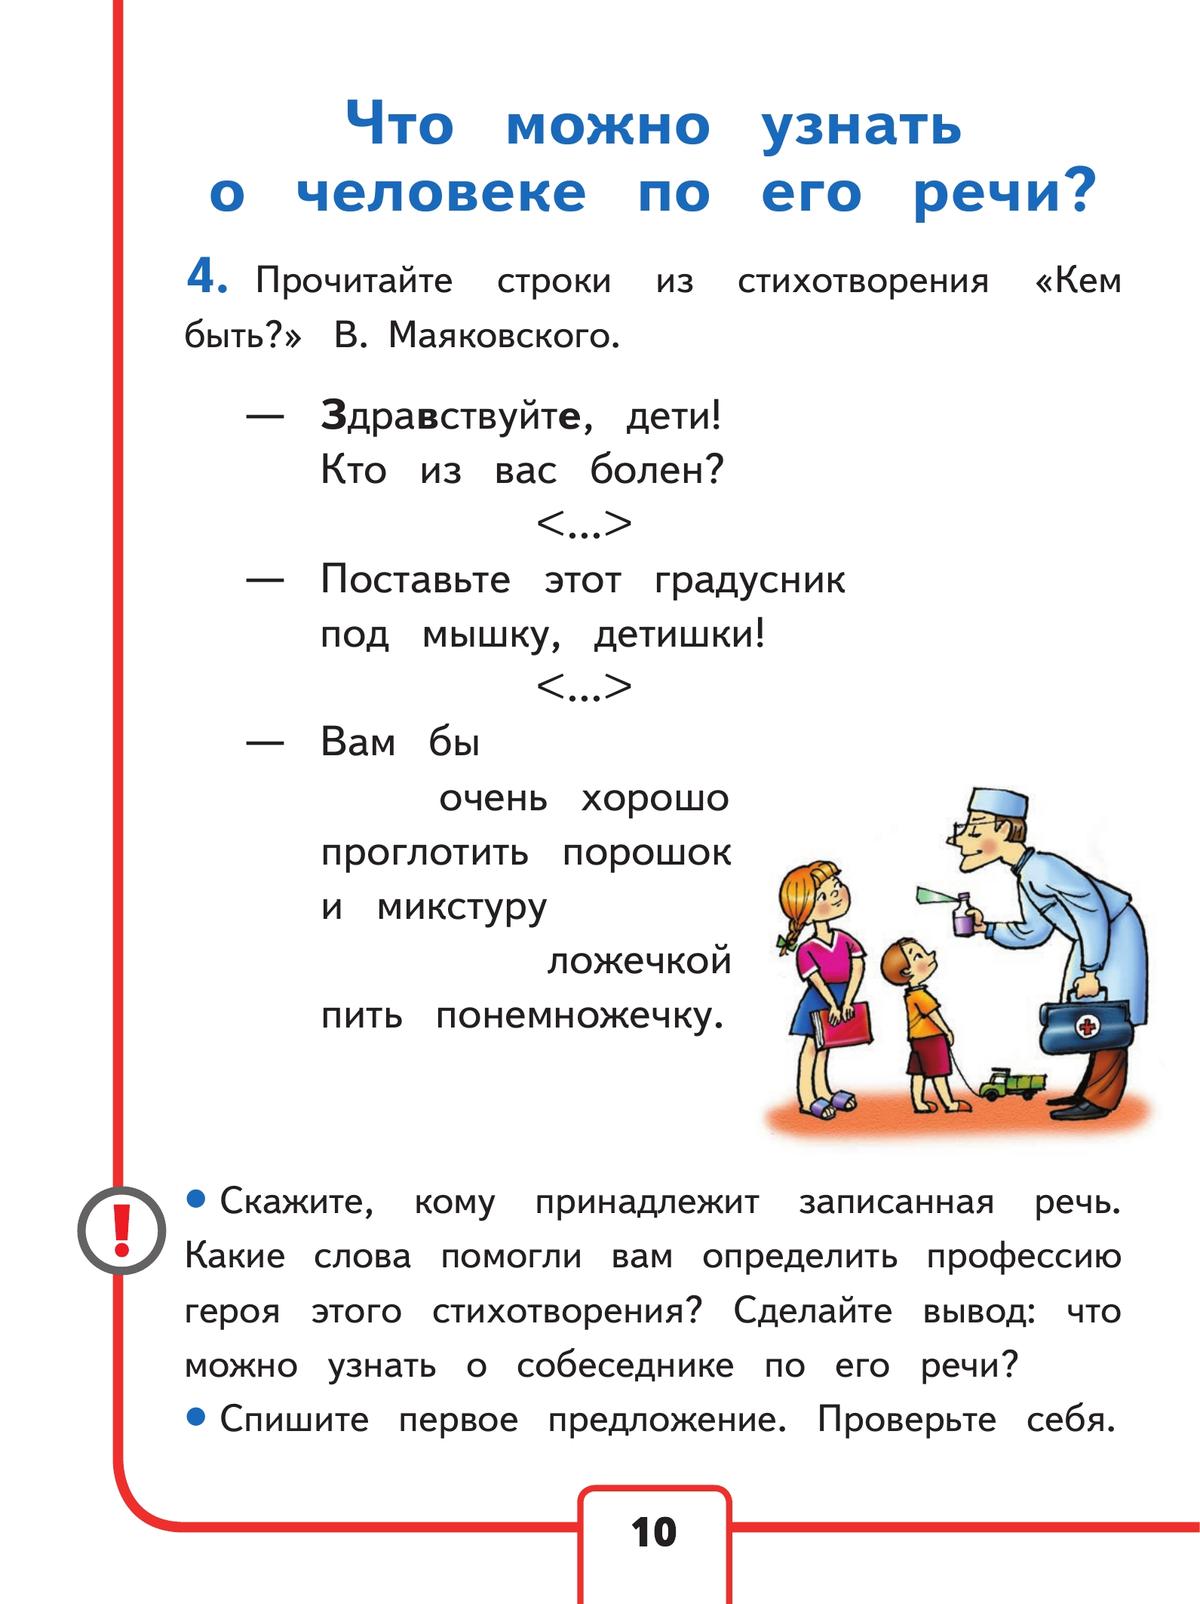 Русский язык. 2 класс. Учебное пособие. В 4 ч. Часть 1 для слабовидящих обучающихся 7